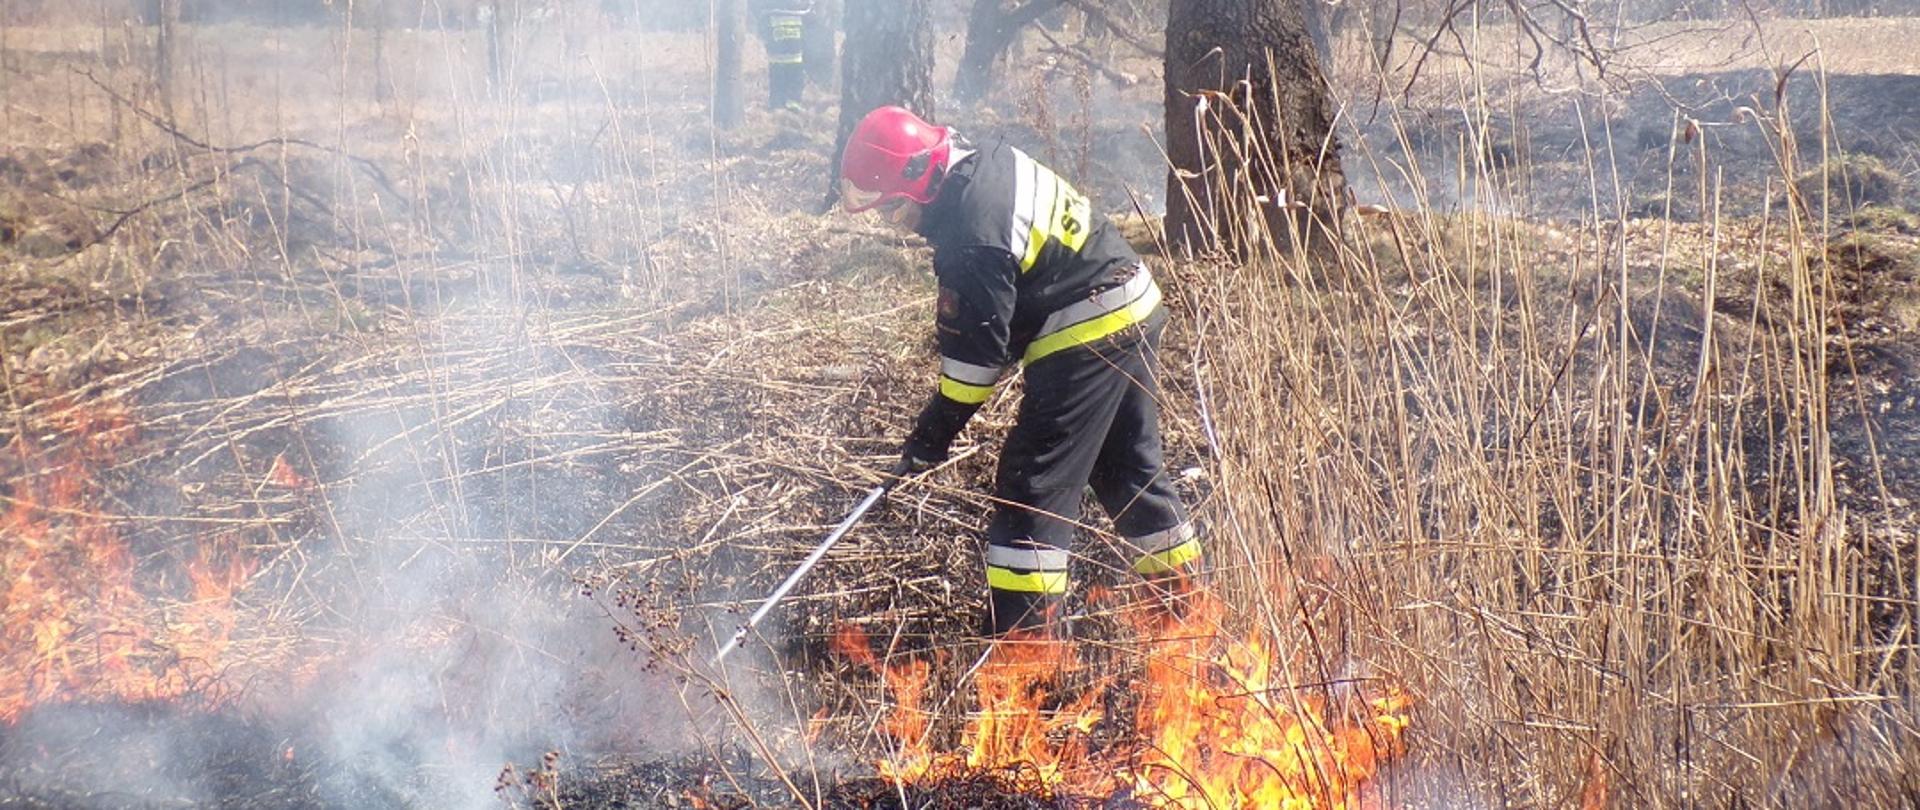 Na zdjęciu widzimy strażaka gaszącego pożar trawy na nieużytkach tłumicą. Na dalszym planie widzimy strażaka gaszącego pożar trawy za pomocą wody.